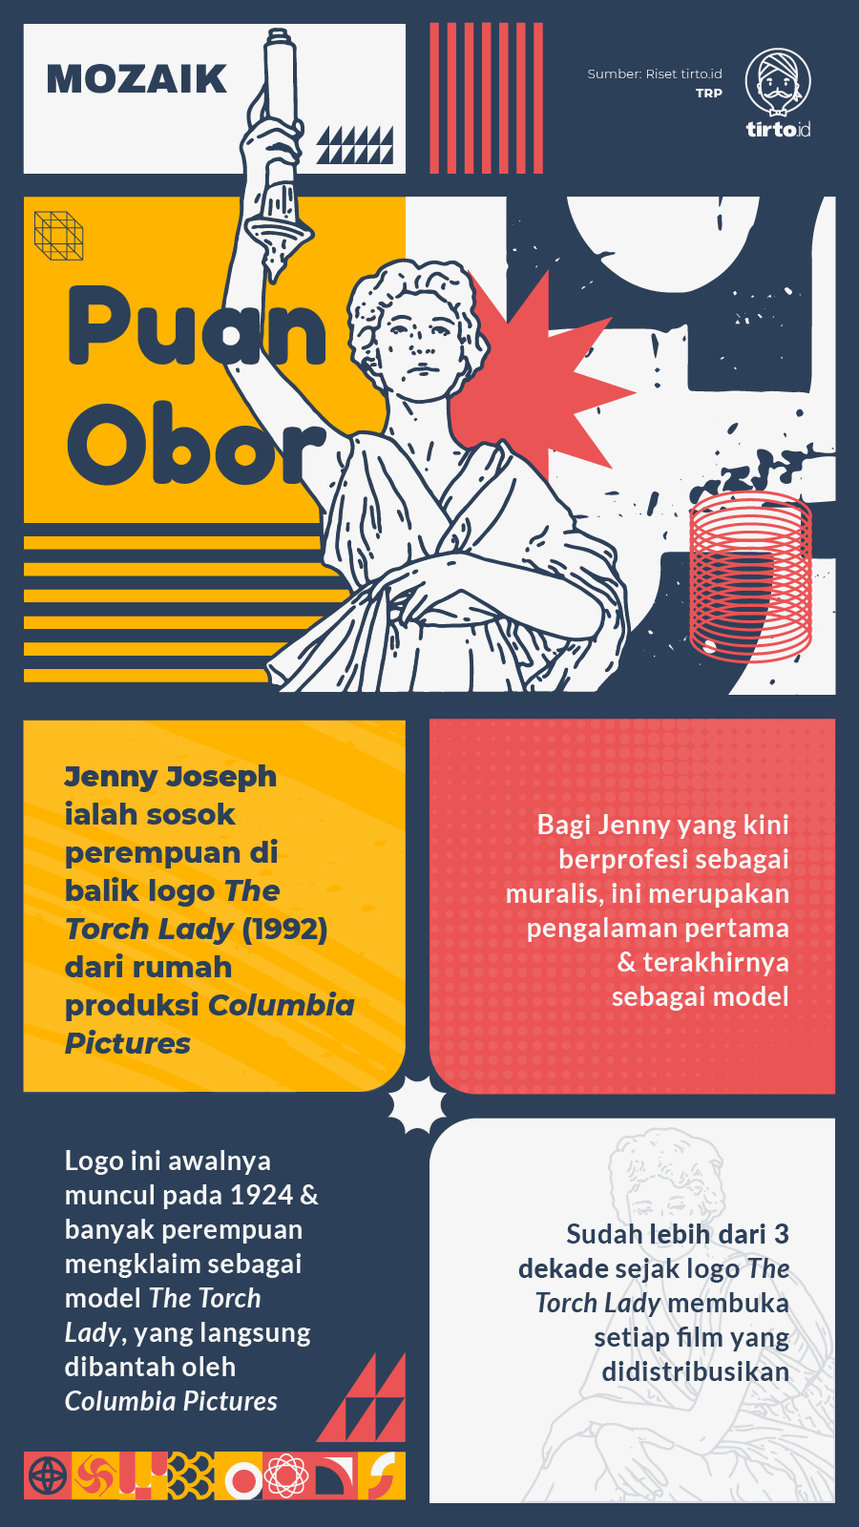 Infografik Mozaik Puan Obor